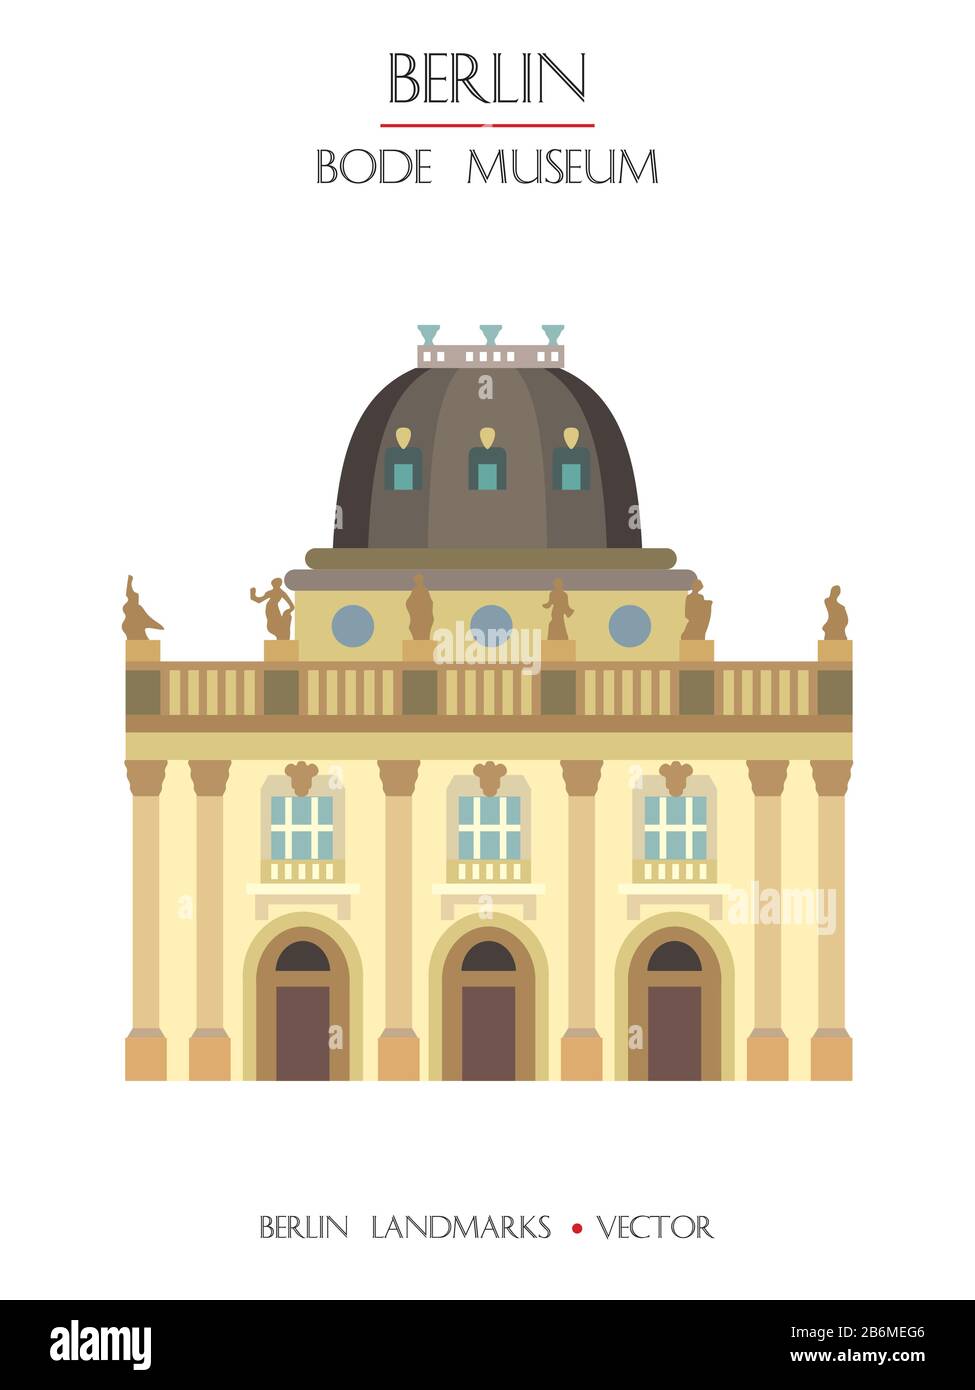 Bunte Vektor-Bode-Museum mit Blick auf die Vorderseite, berühmtes Wahrzeichen von Berlin, Deutschland. Vertikale Vektor-Flachdarstellung isoliert auf weißem Hintergrund. Berlin tra Stock Vektor